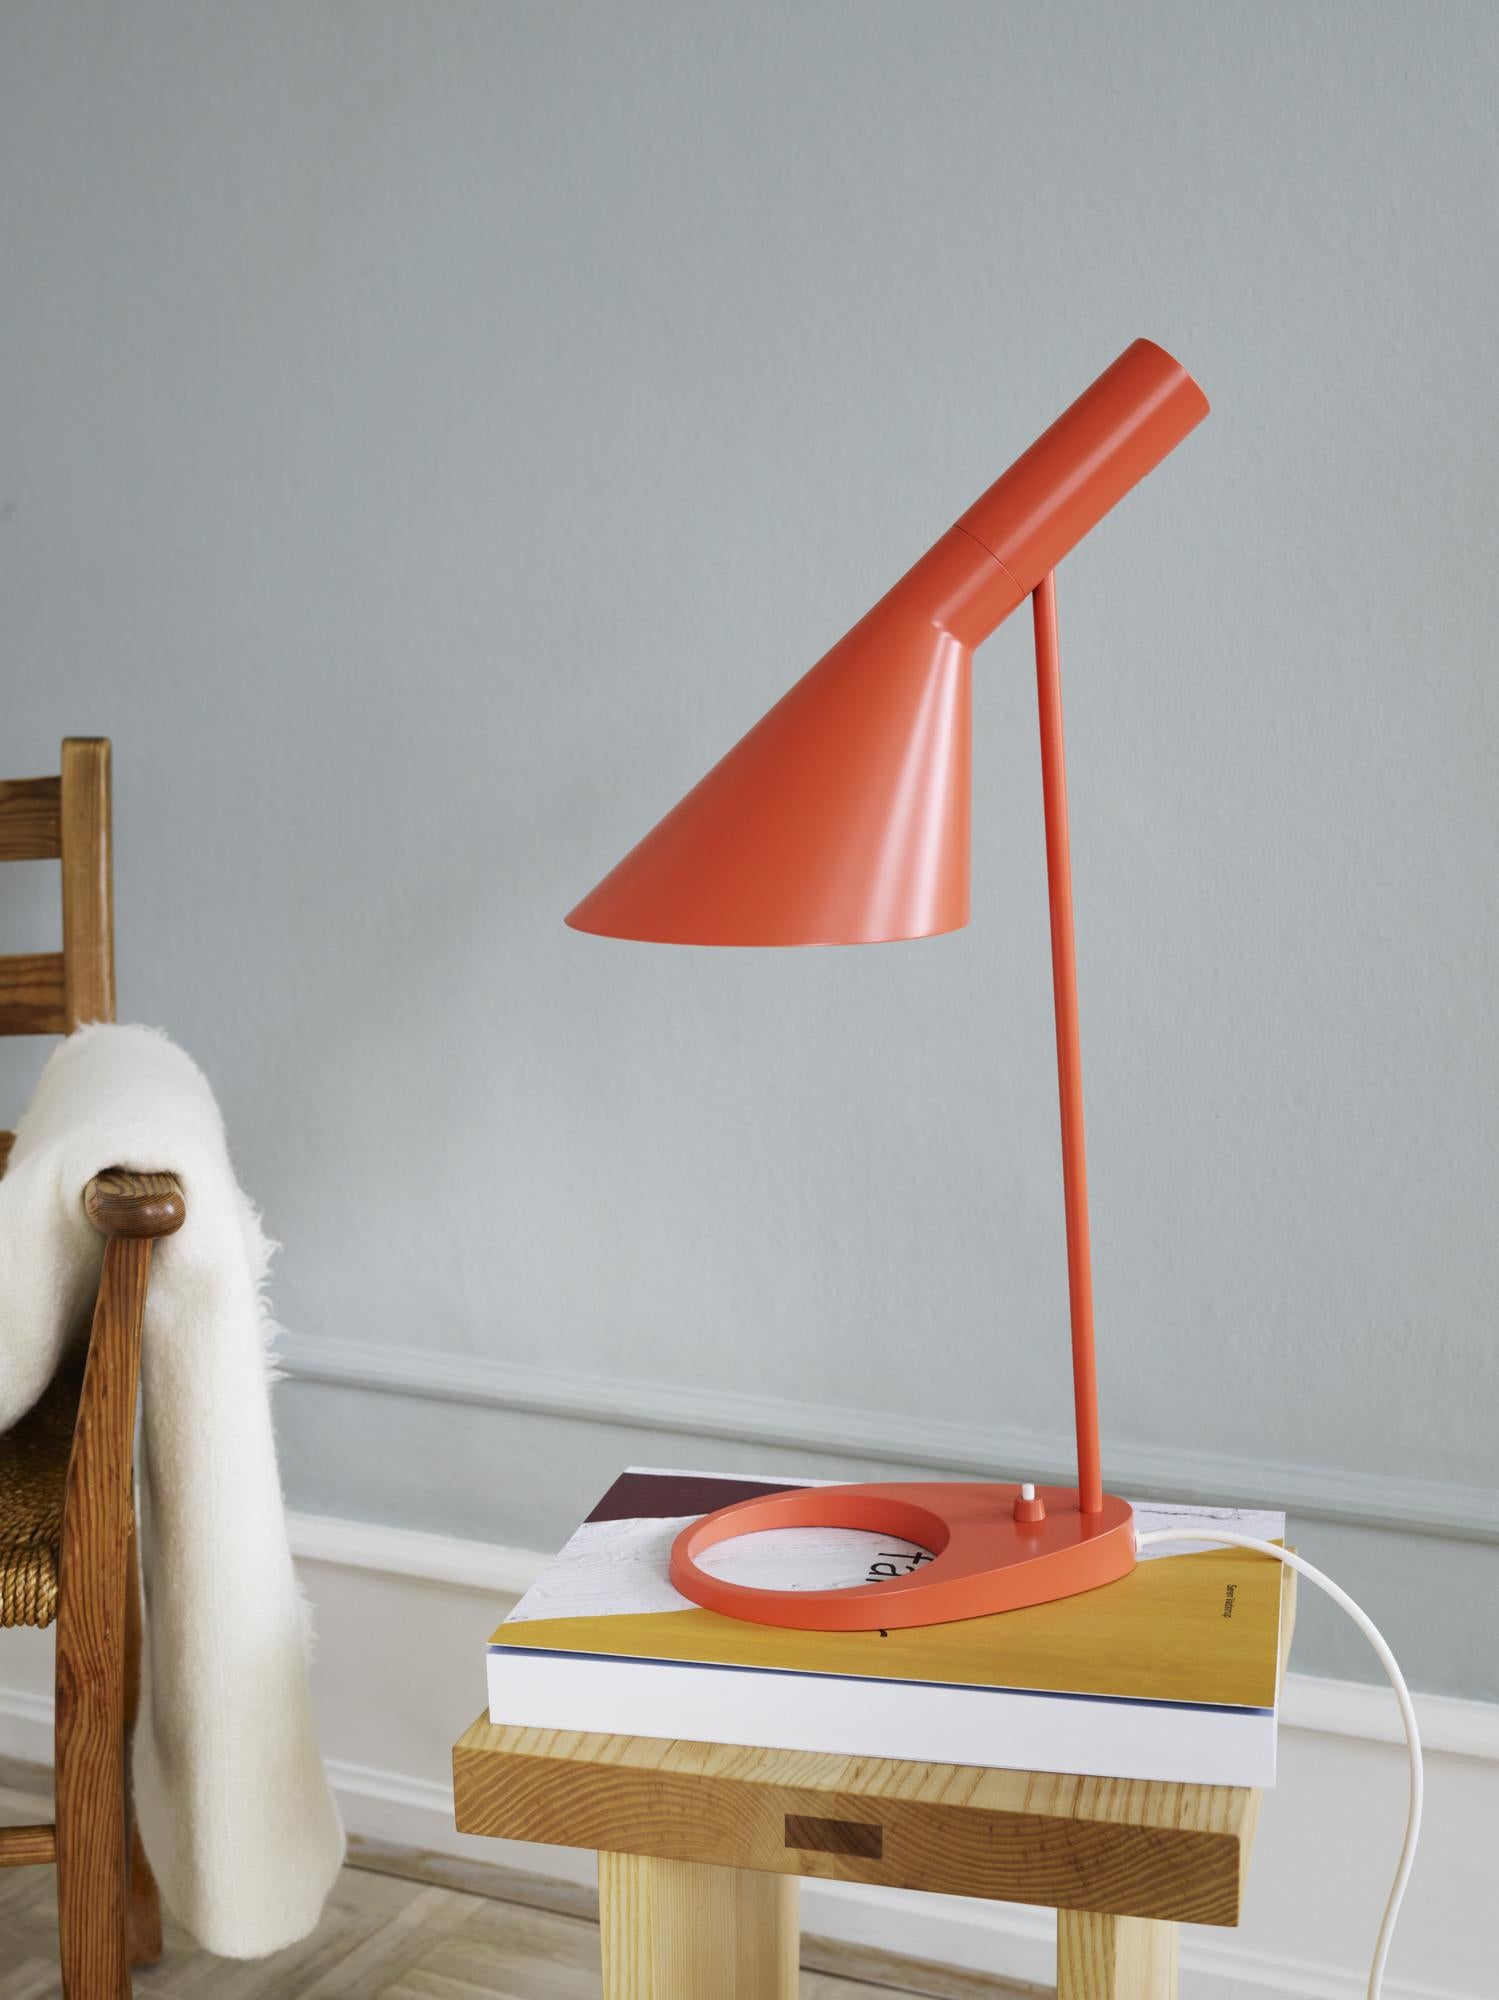 Lampe de table AJ de Arne Jacobsen en orange électrique pour Louis Poulsen.

La série AJ faisait partie de la collection de luminaires que le célèbre designer danois Arne Jacobsen a créée pour le premier hôtel SAS Royal en 1957. Aujourd'hui, ses